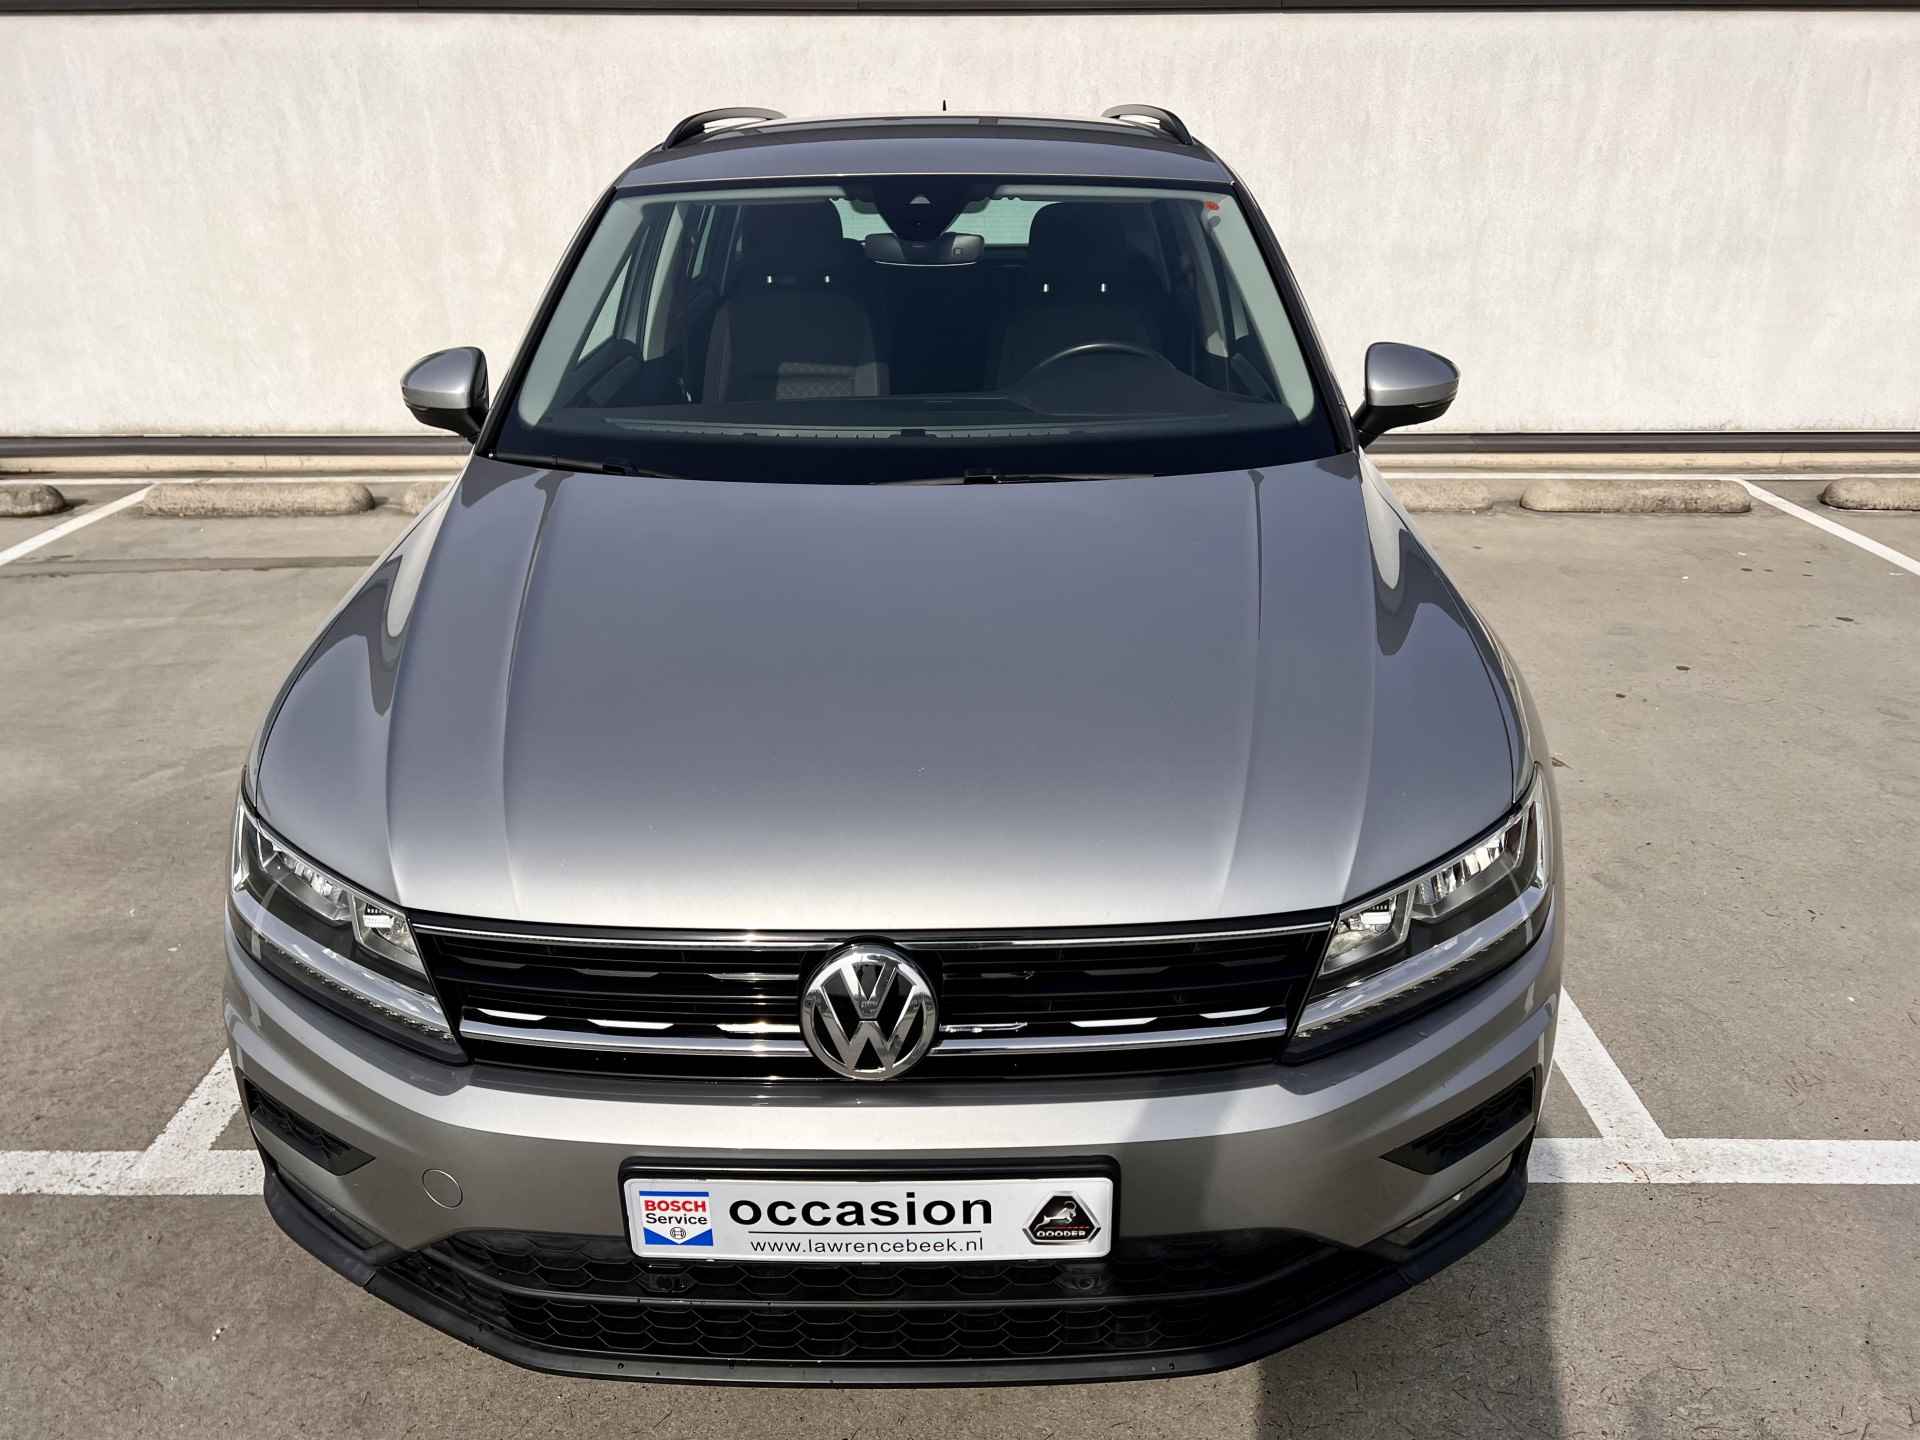 Volkswagen Tiguan 1.4 TSI ACT 150PK Comfortline | Trekhaak Wegklap. | LED | PDC V+ A | Navi | Bleu-Tooth | Key-Less | % Bovag Occasion Partner % - 13/42